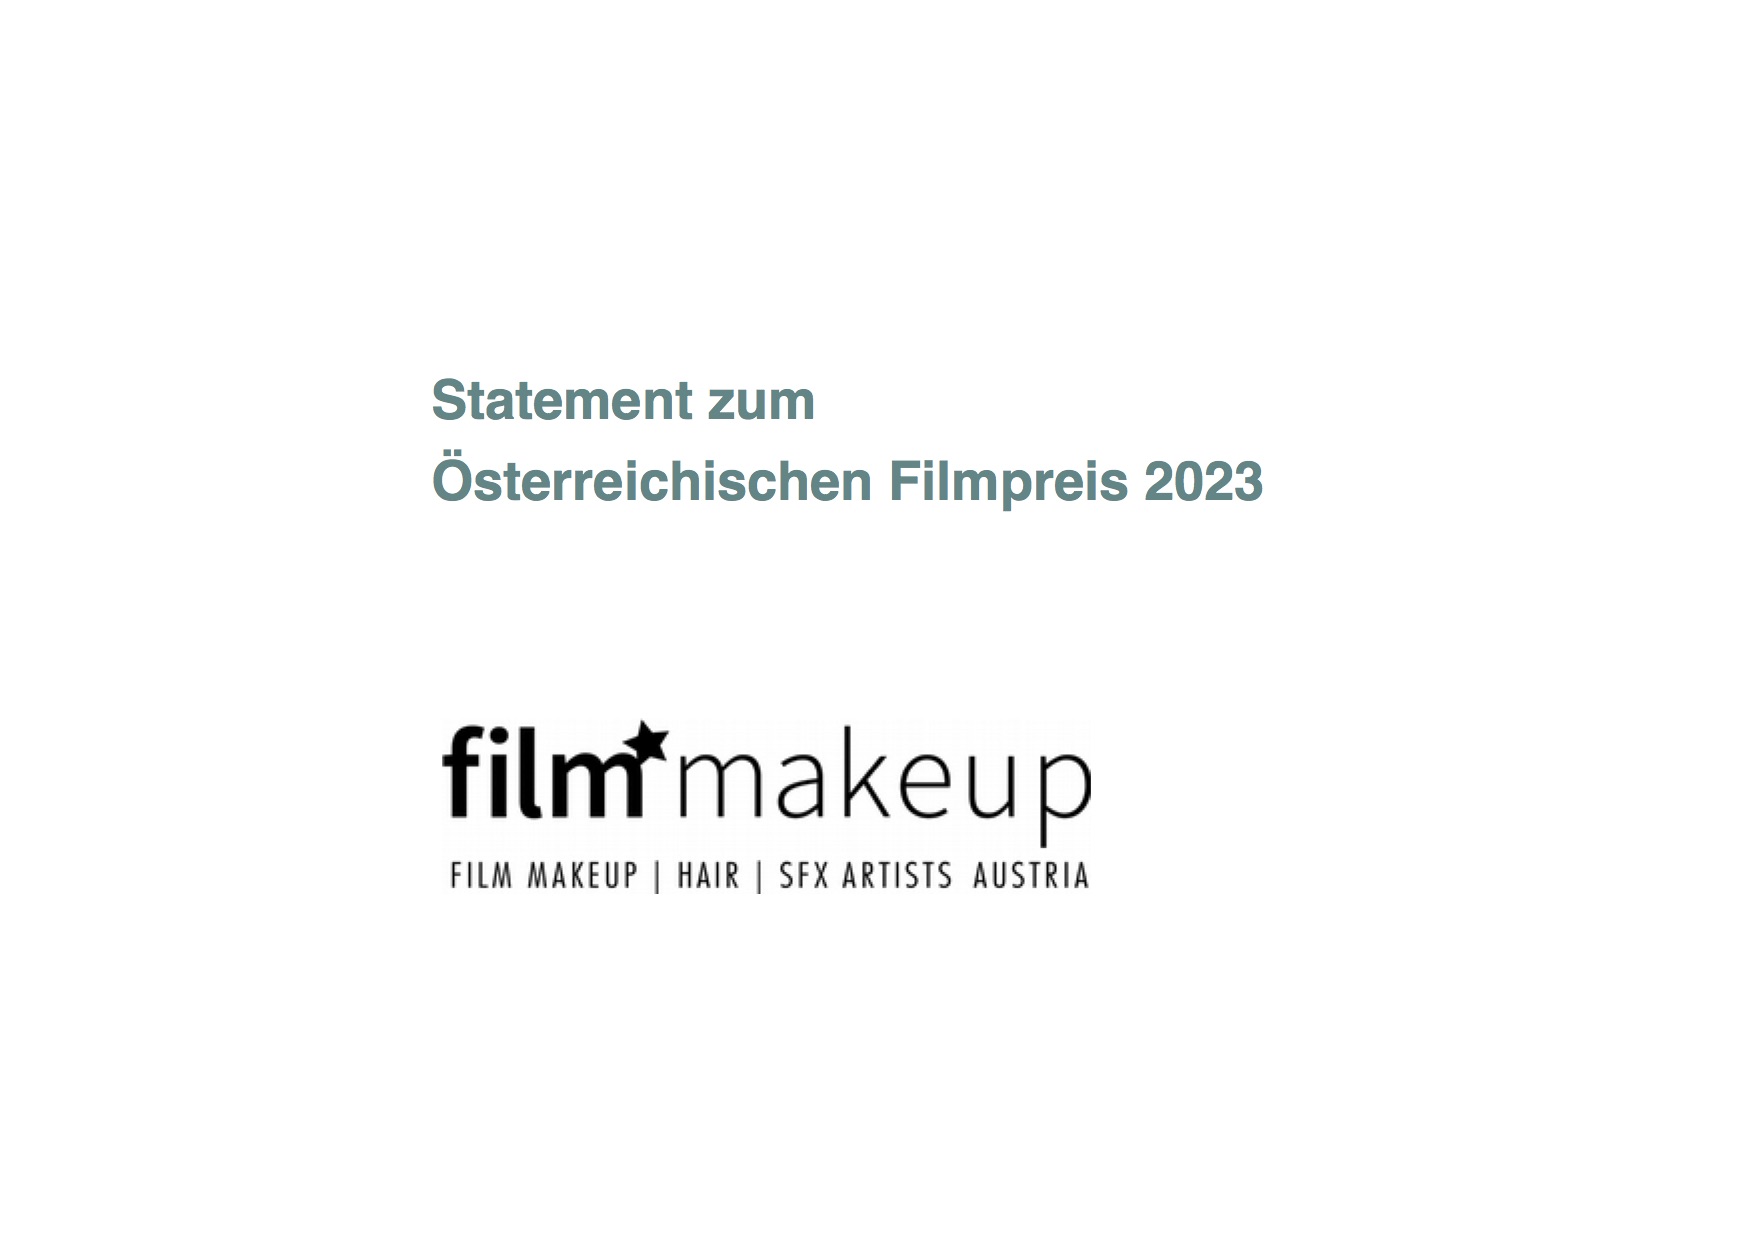 Statement zum Österreichischen Filmpreis 2023